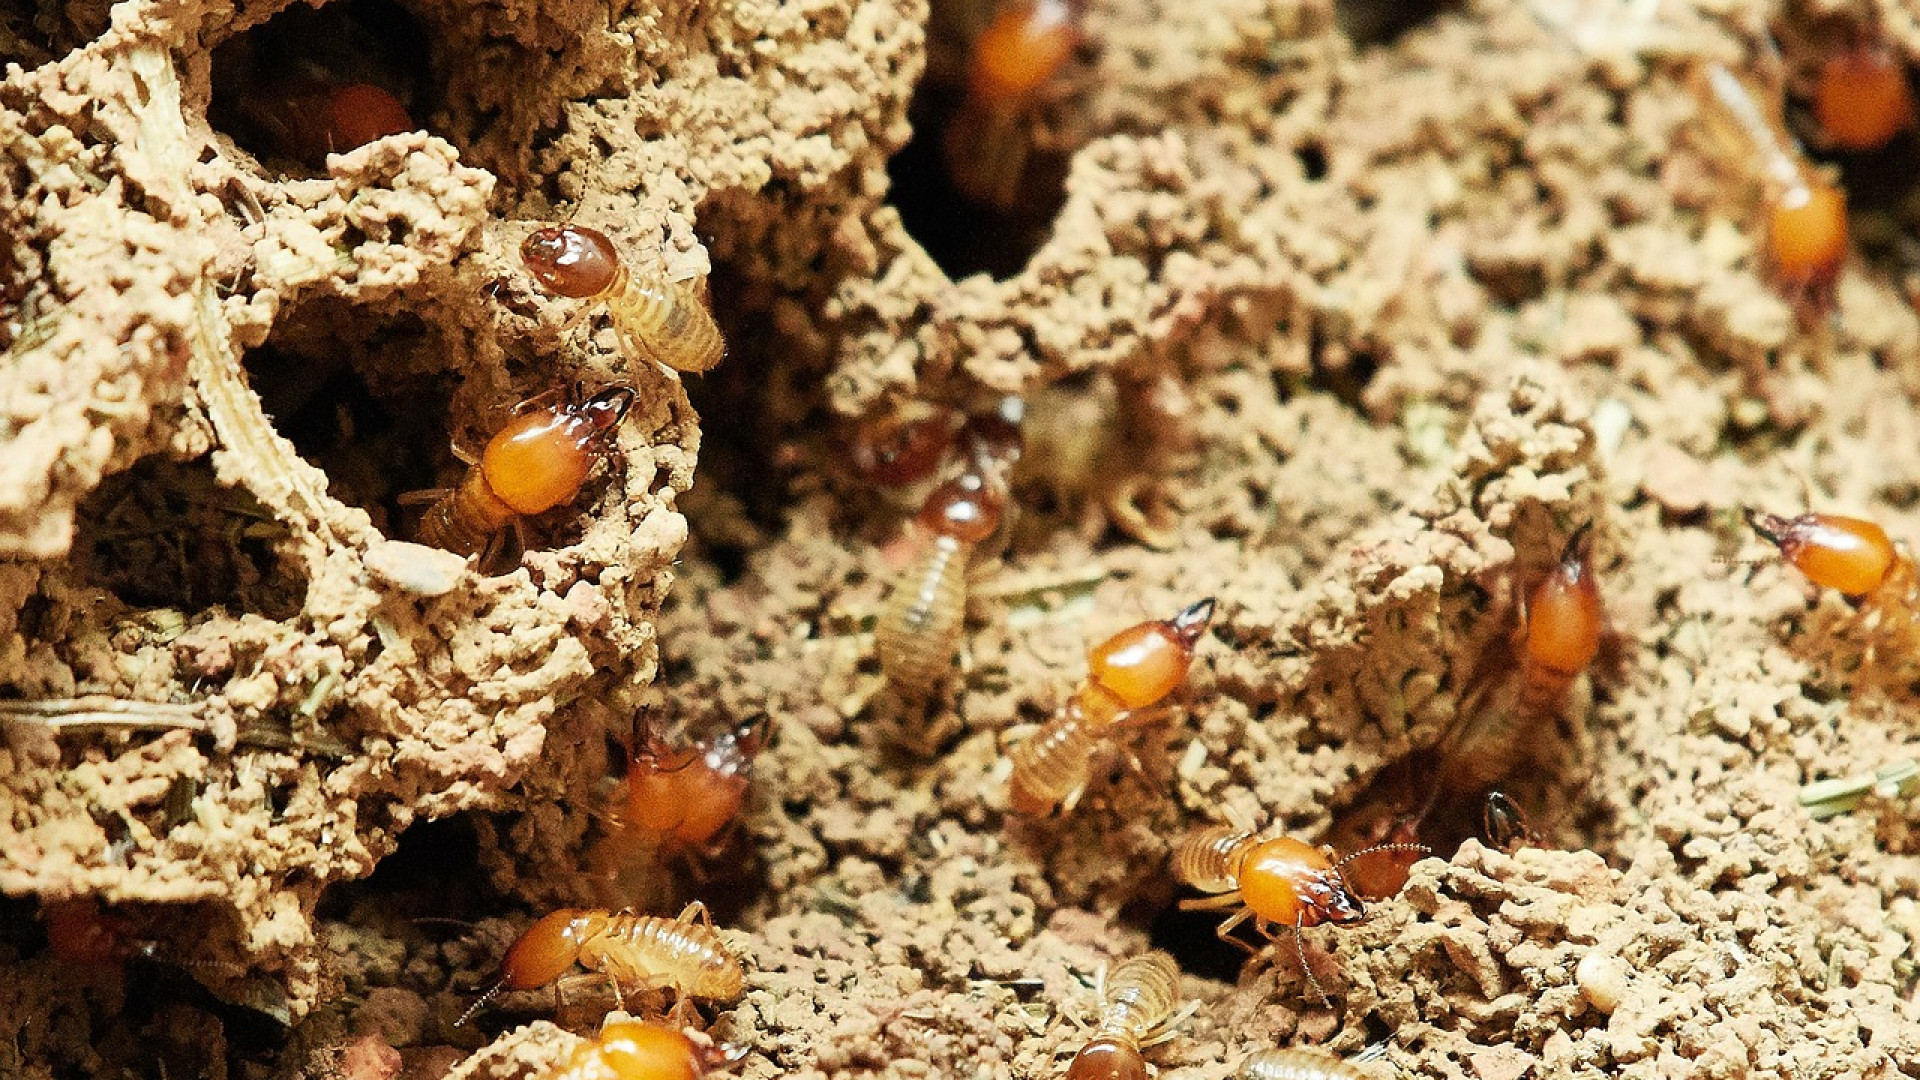 Comment lutter contre les termites ?